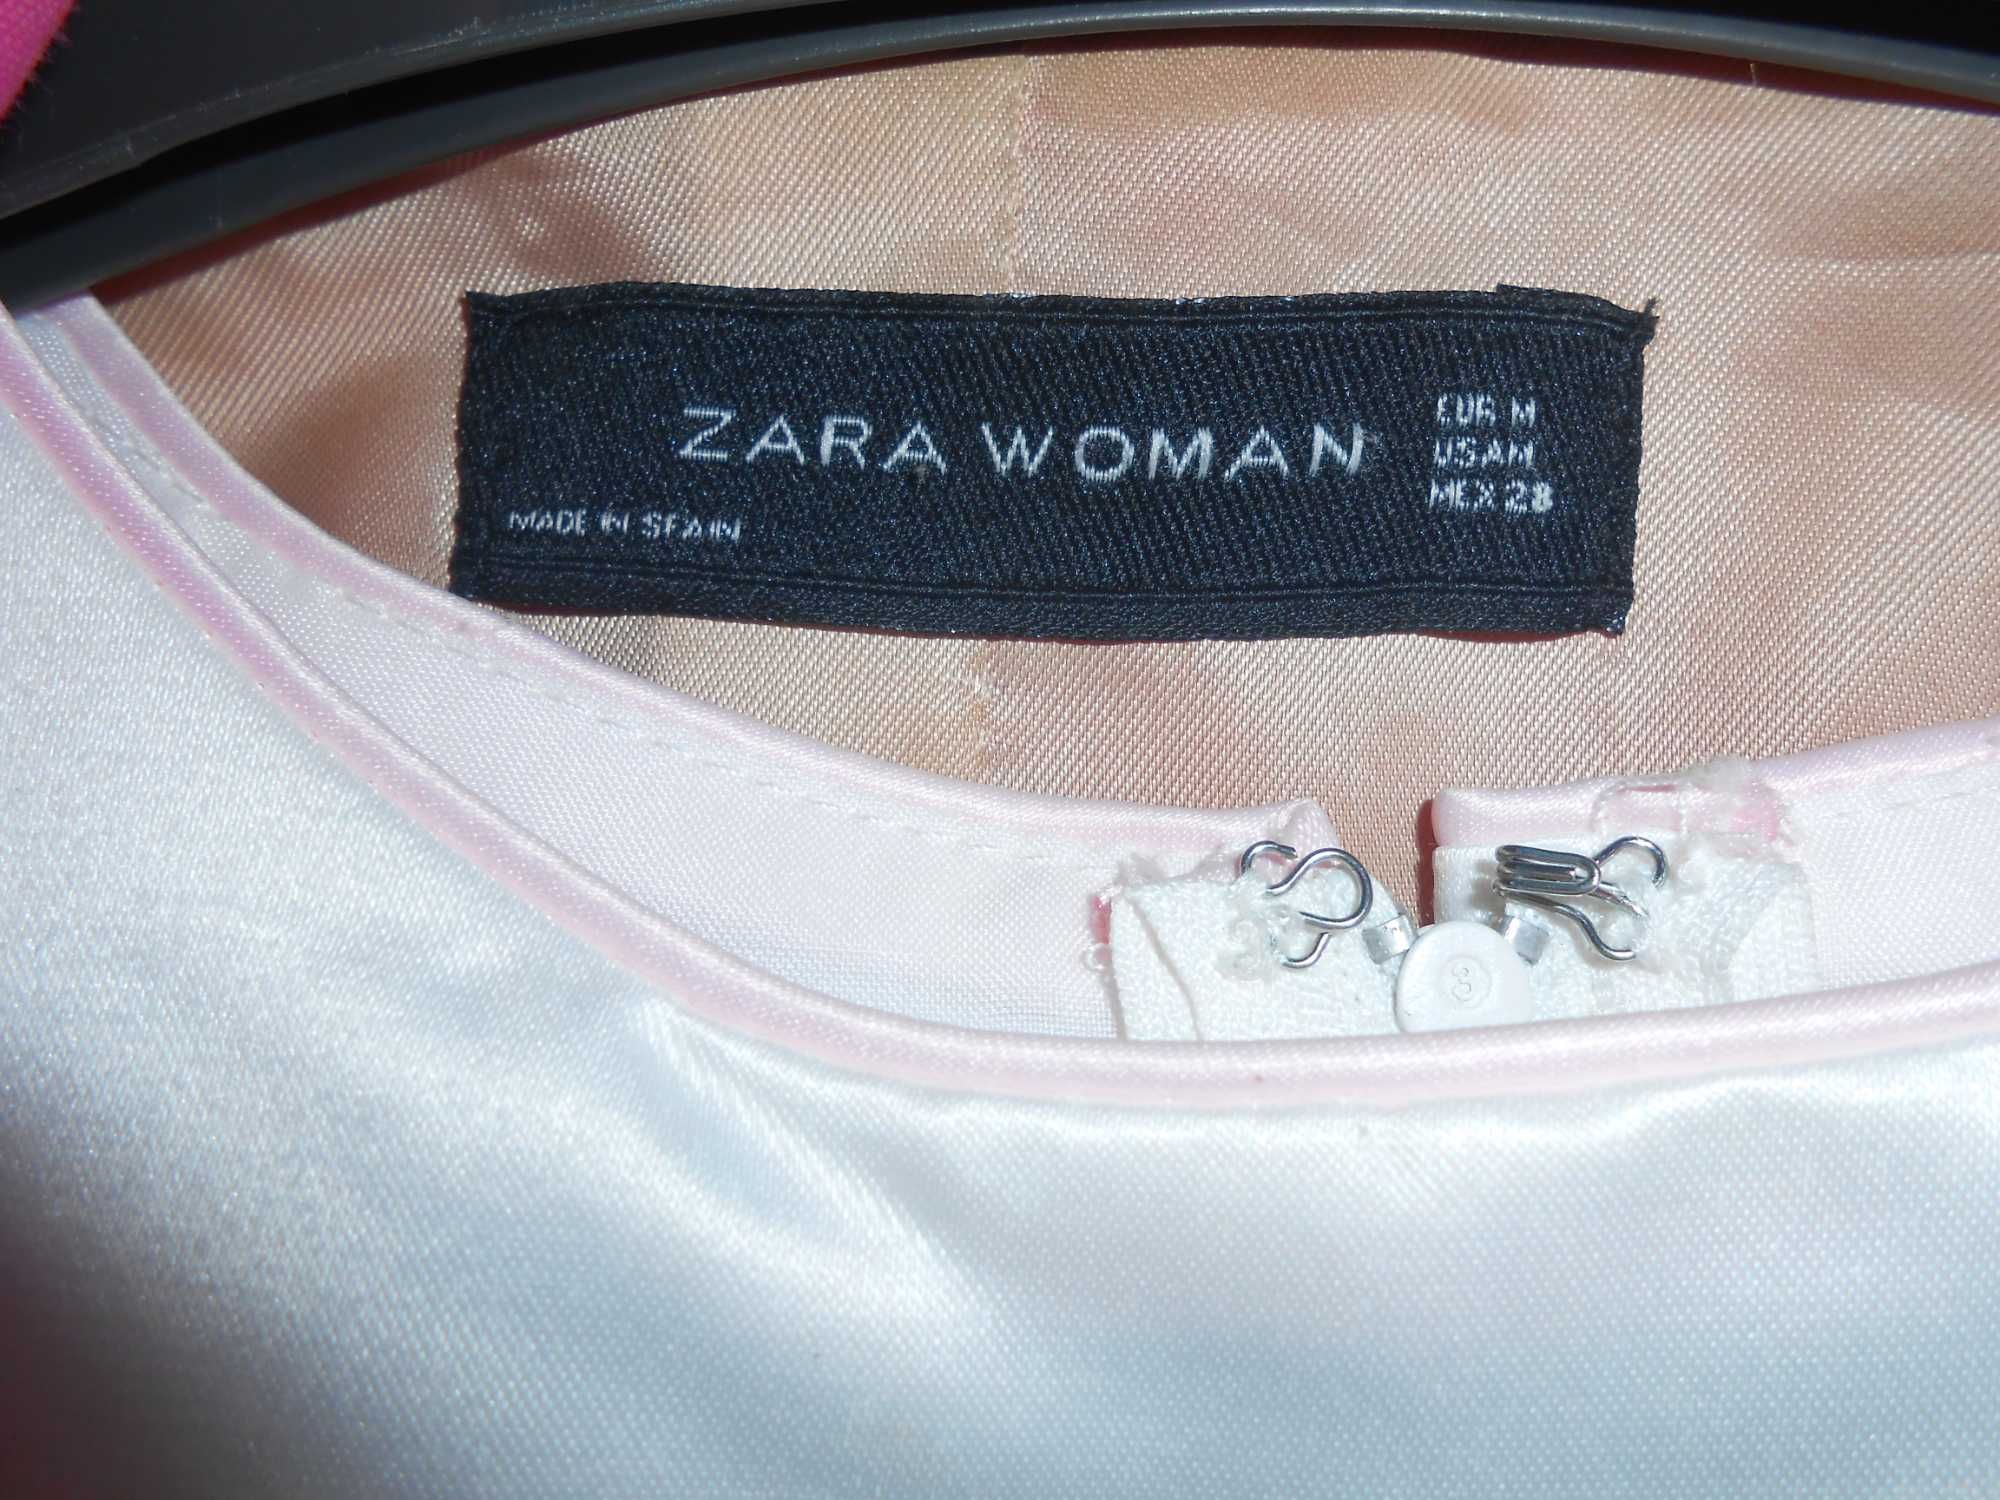 Розовый женский пиджак "ZARA WOMAN" (Made in Spain) и белое платье